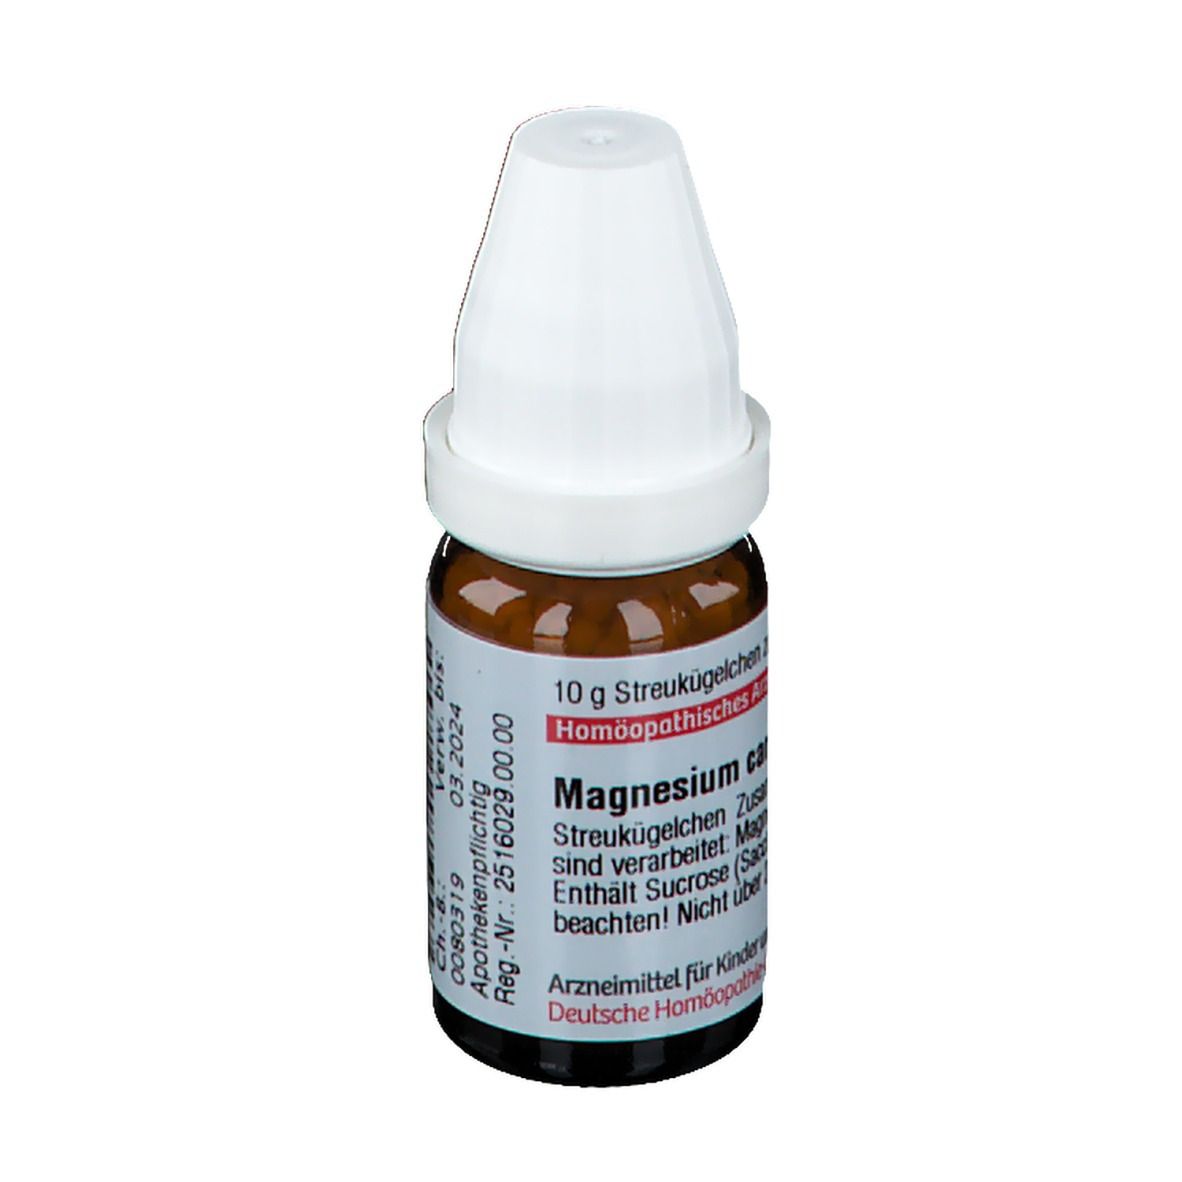 DHU Magnesium Carbonicum C12